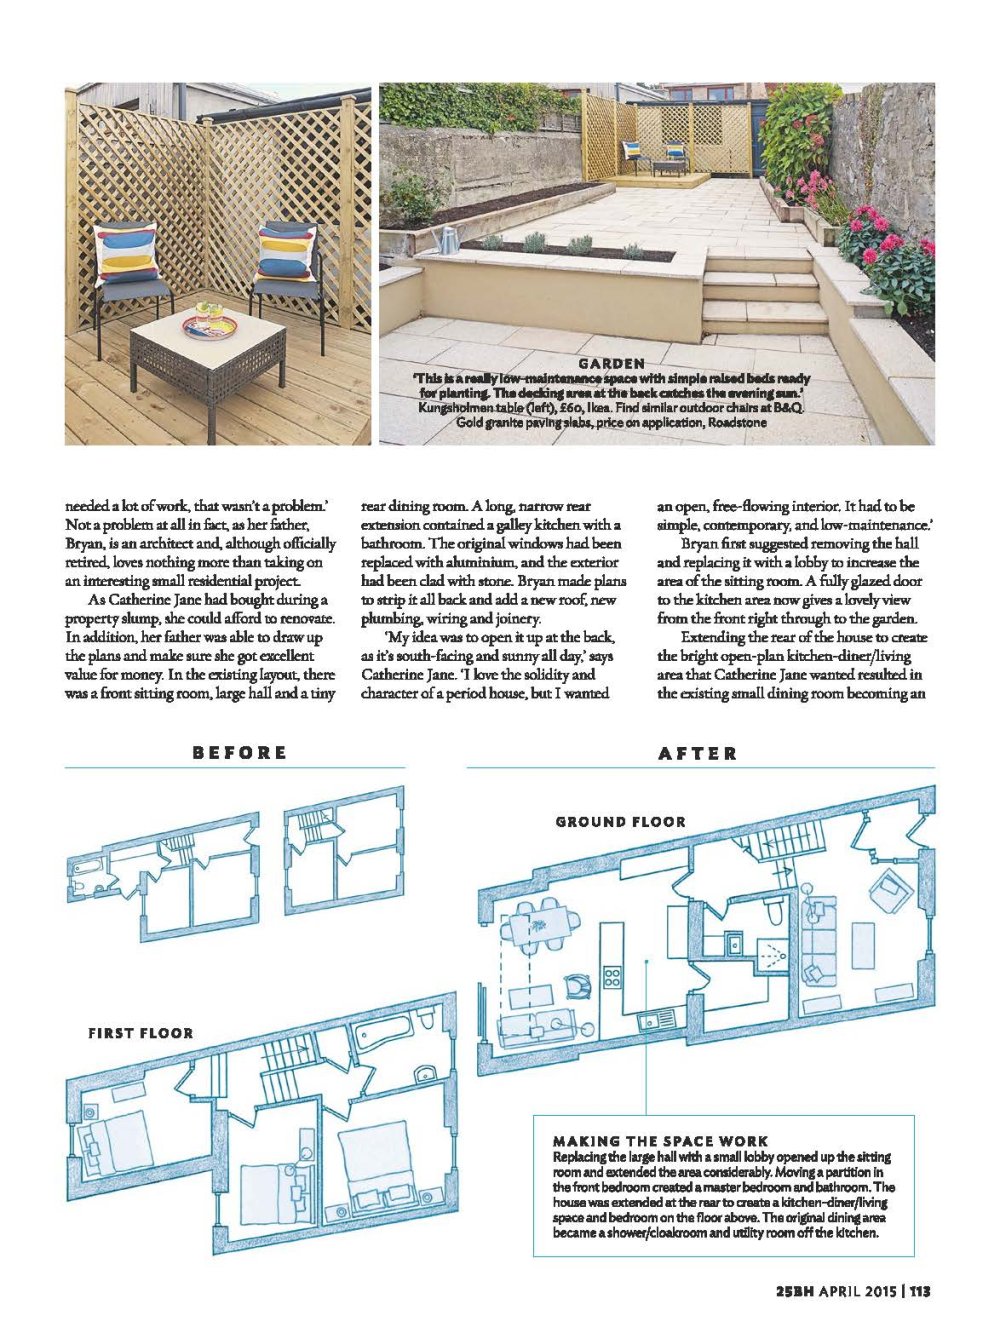 国外杂志201504_25 Beautiful Homes - April 2015_页面_090.jpg